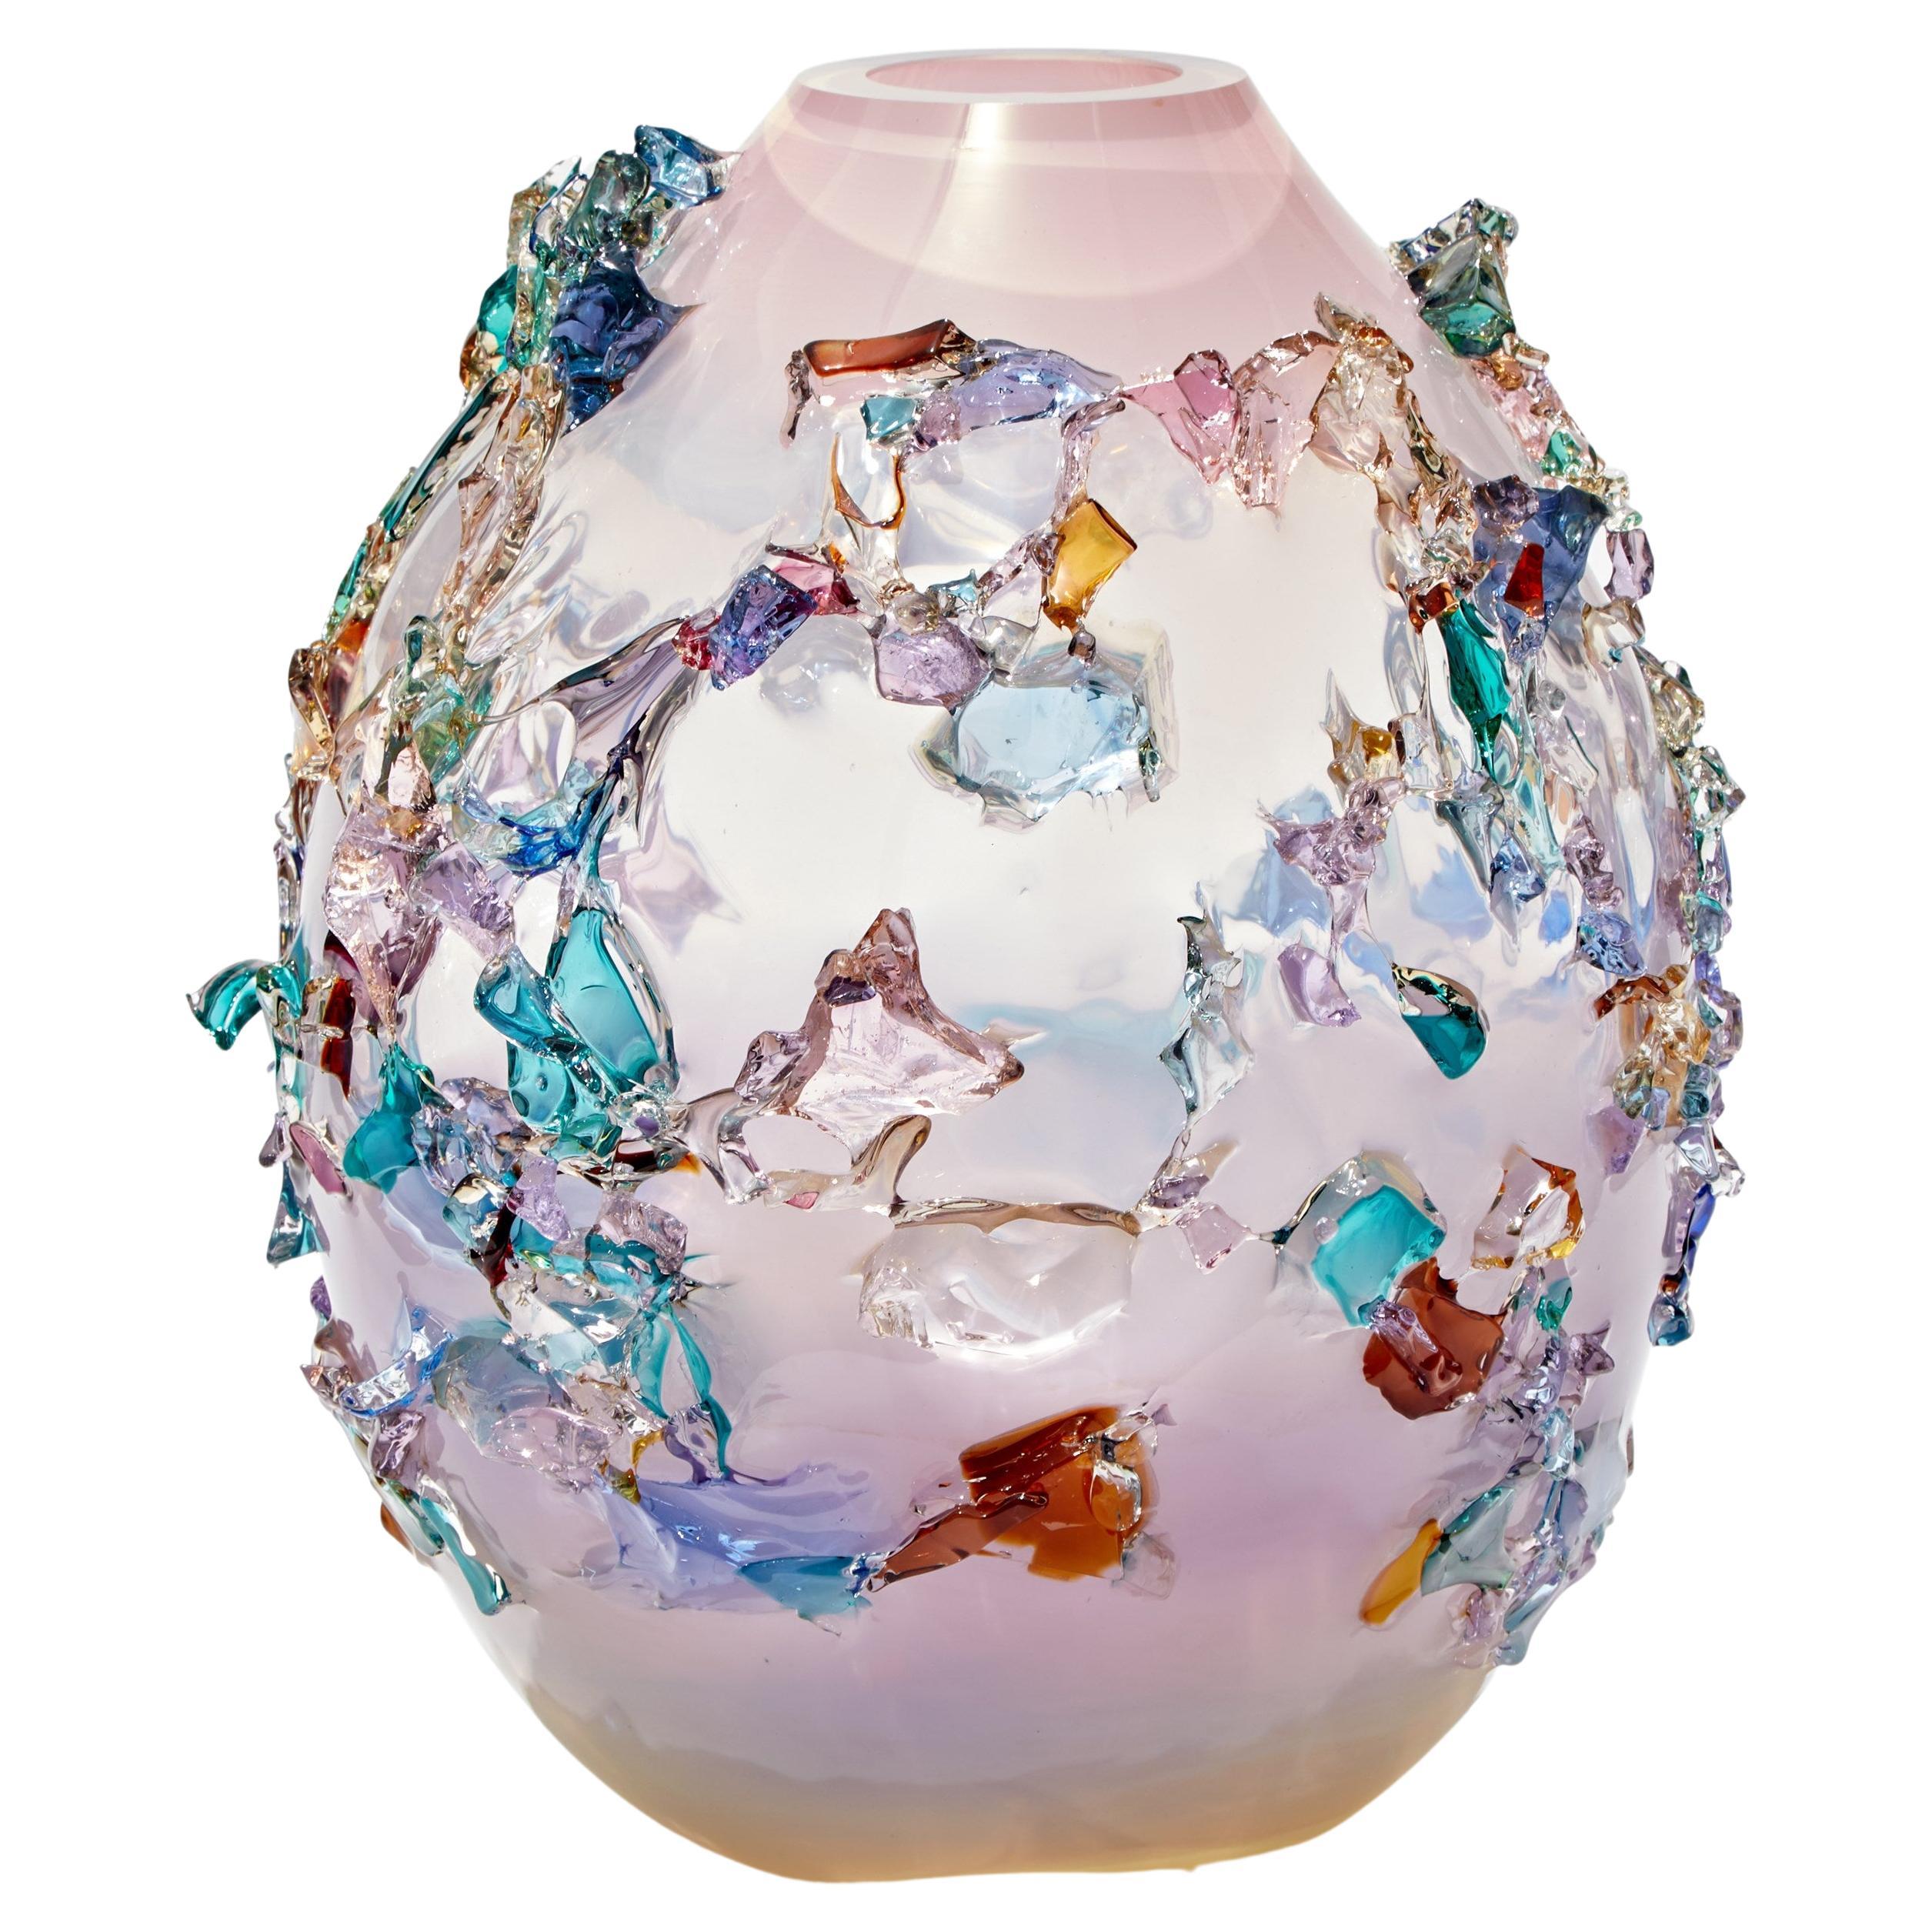 Sakura TRP21010, a Glass Vase in Pink with Mixed Colors by Maarten Vrolijk